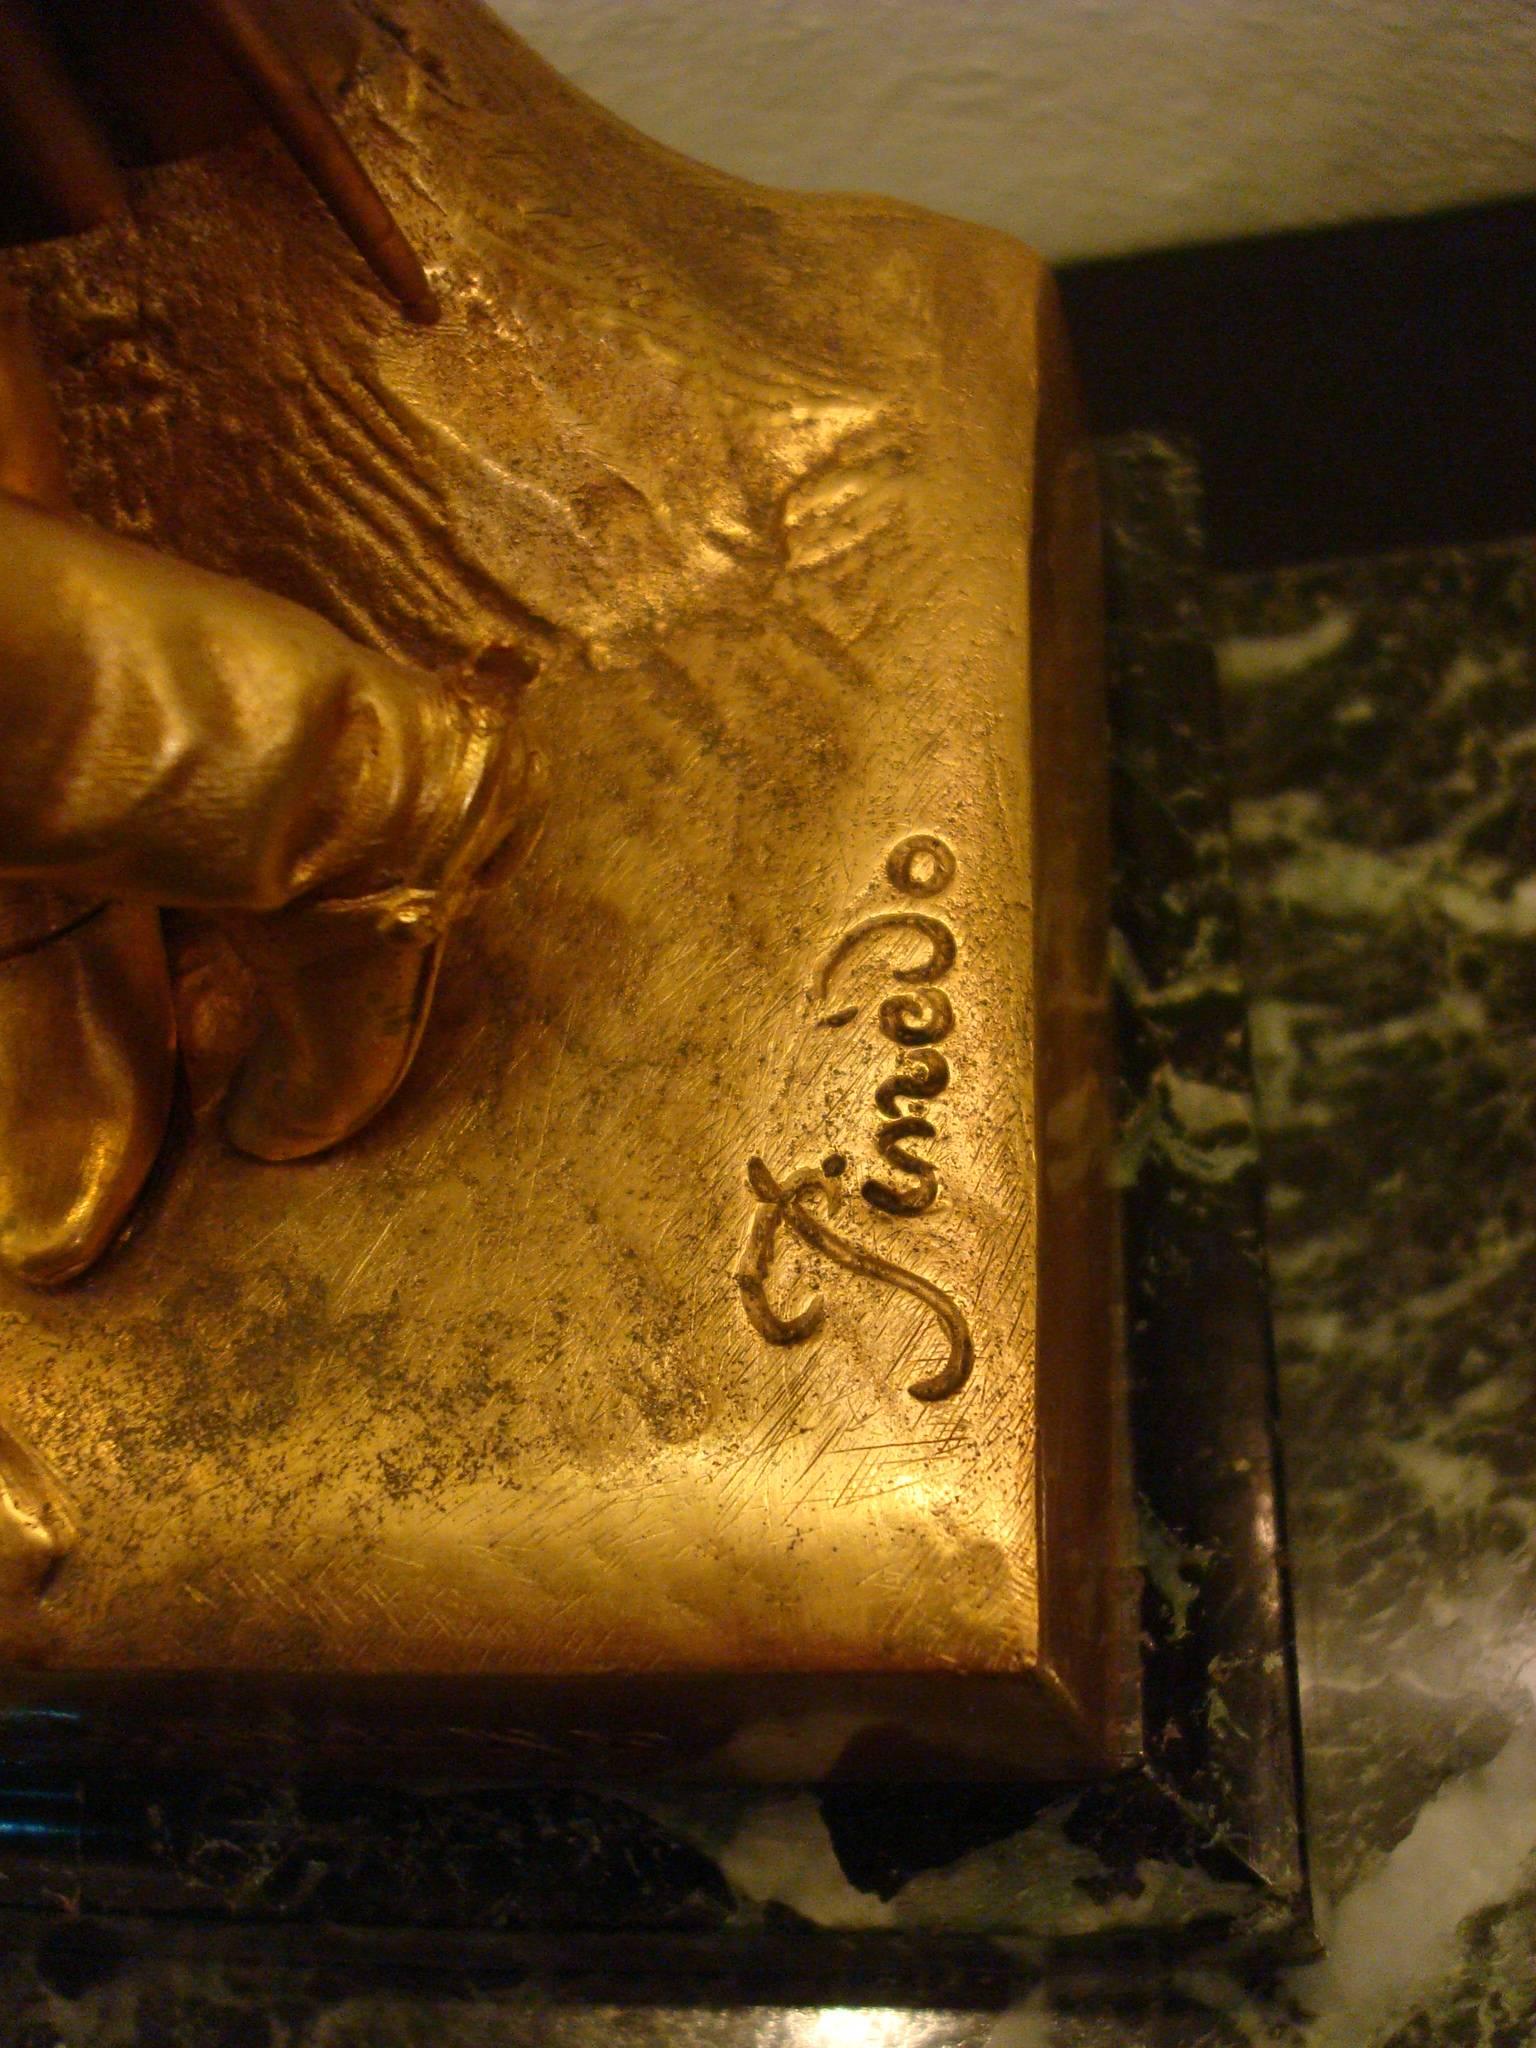 Napoleon-Bonaparte-Schreibtisch-Tintenfass aus Bronze, signiert Pinedo mit Gießereimarke. Montiert über einem grünen Alpenmarmor.

Antike signiert 19. große Bronze Goldauflagen Napoleon Tintenfass.